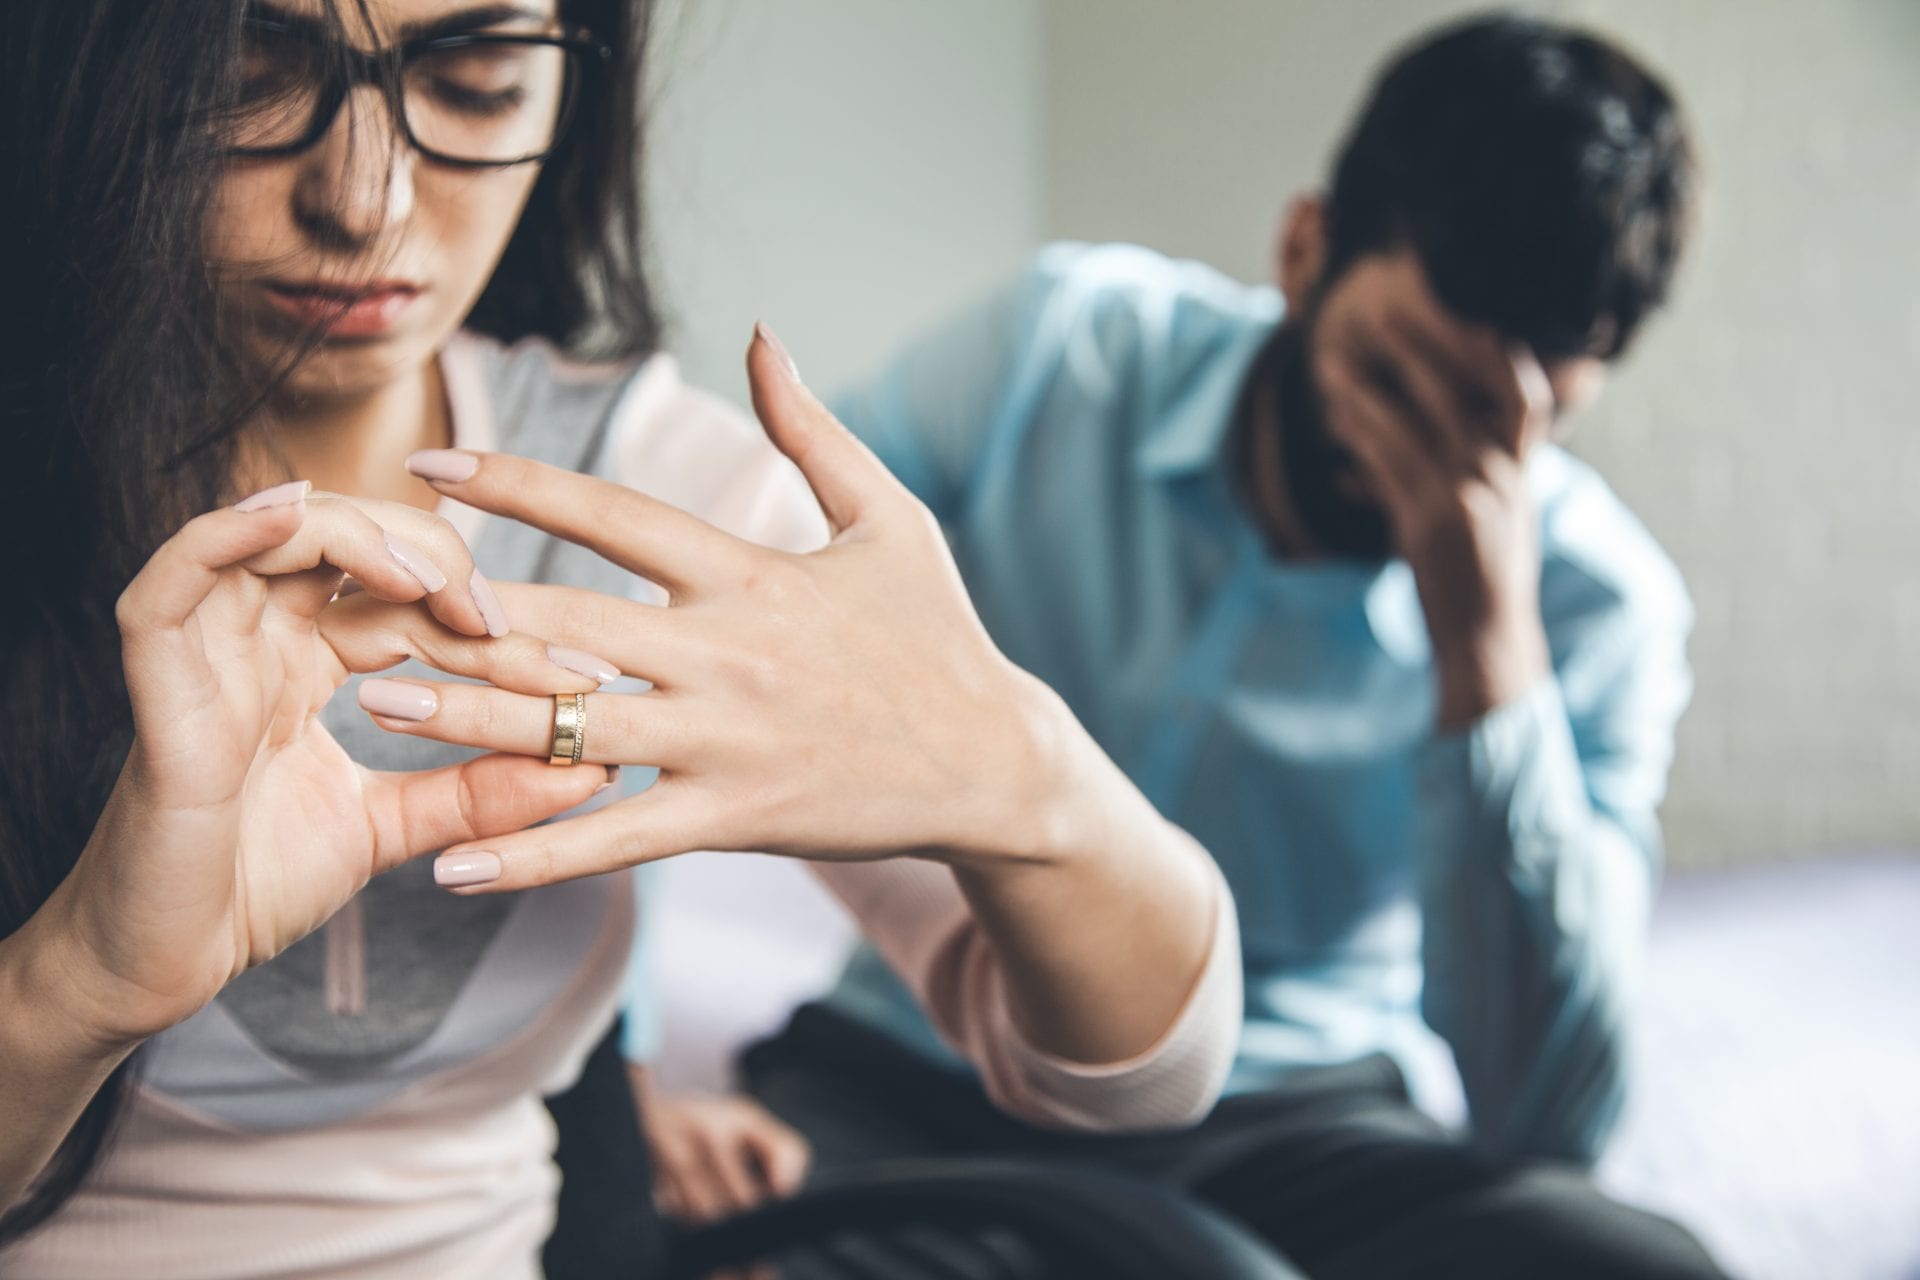 Почему и как мужчины переживают о разводе?